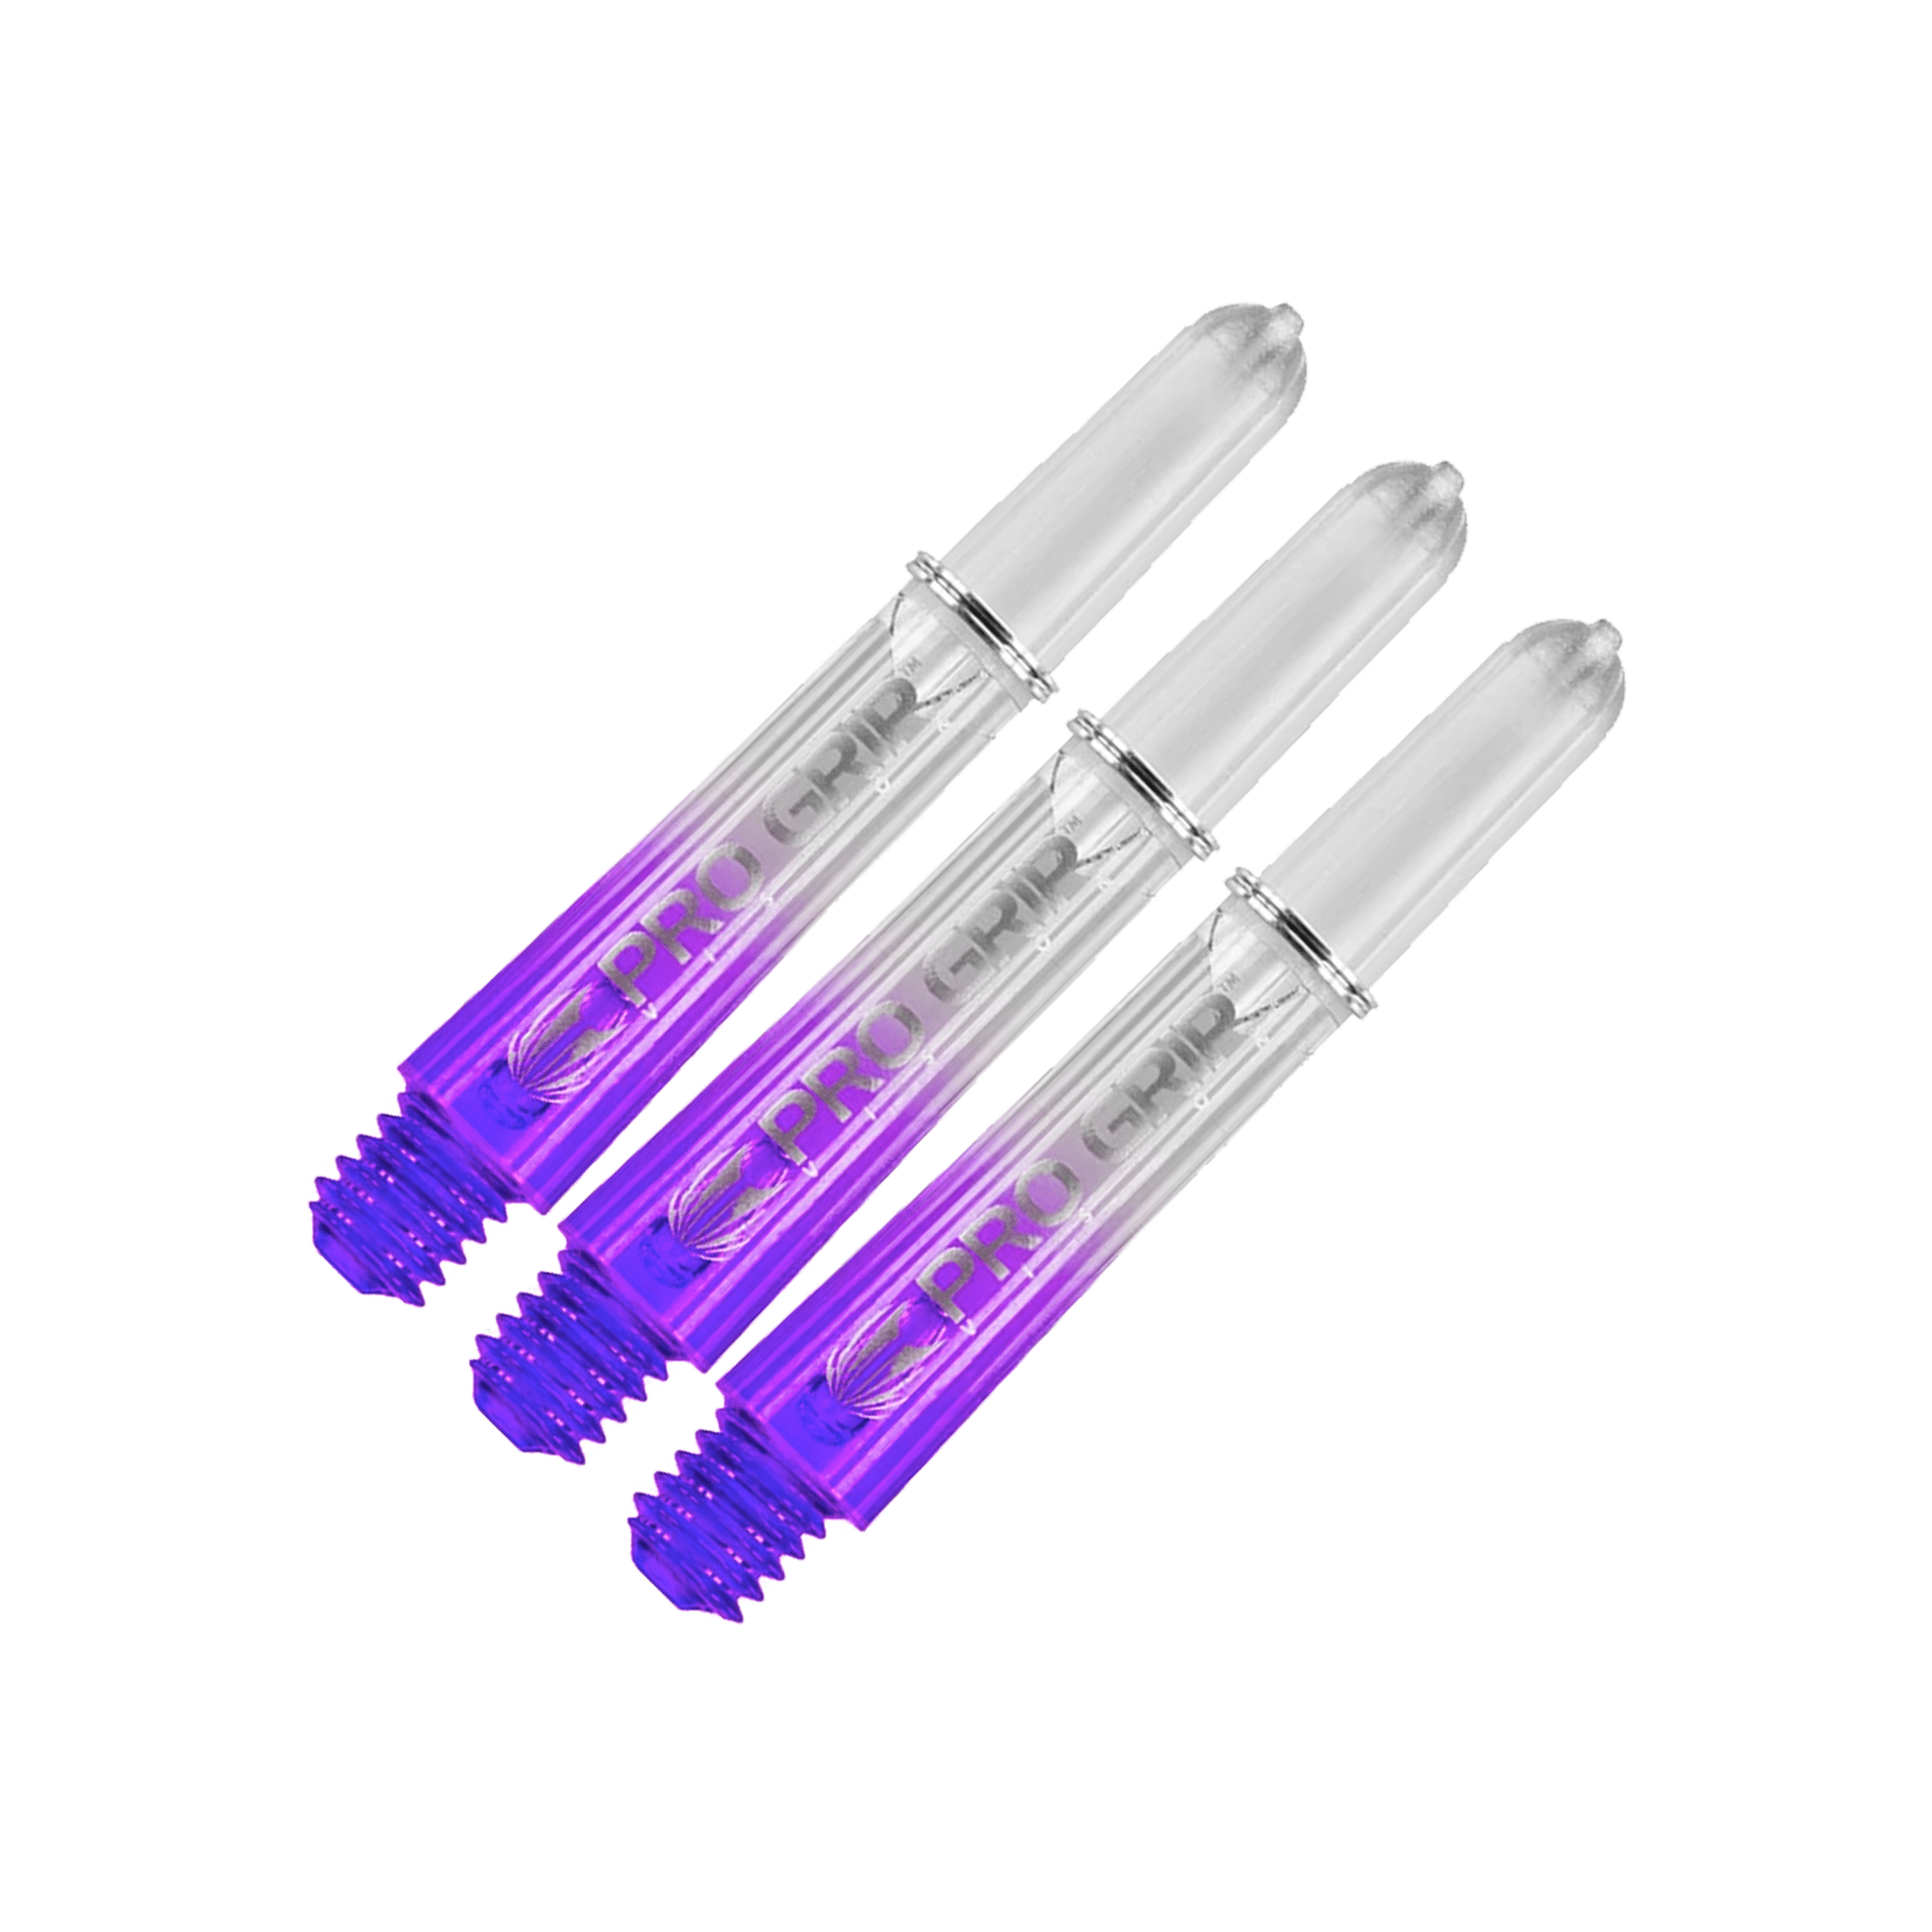 Target Pro Vision Short (34mm) Polycarbonate Dart Shafts Purple Shafts